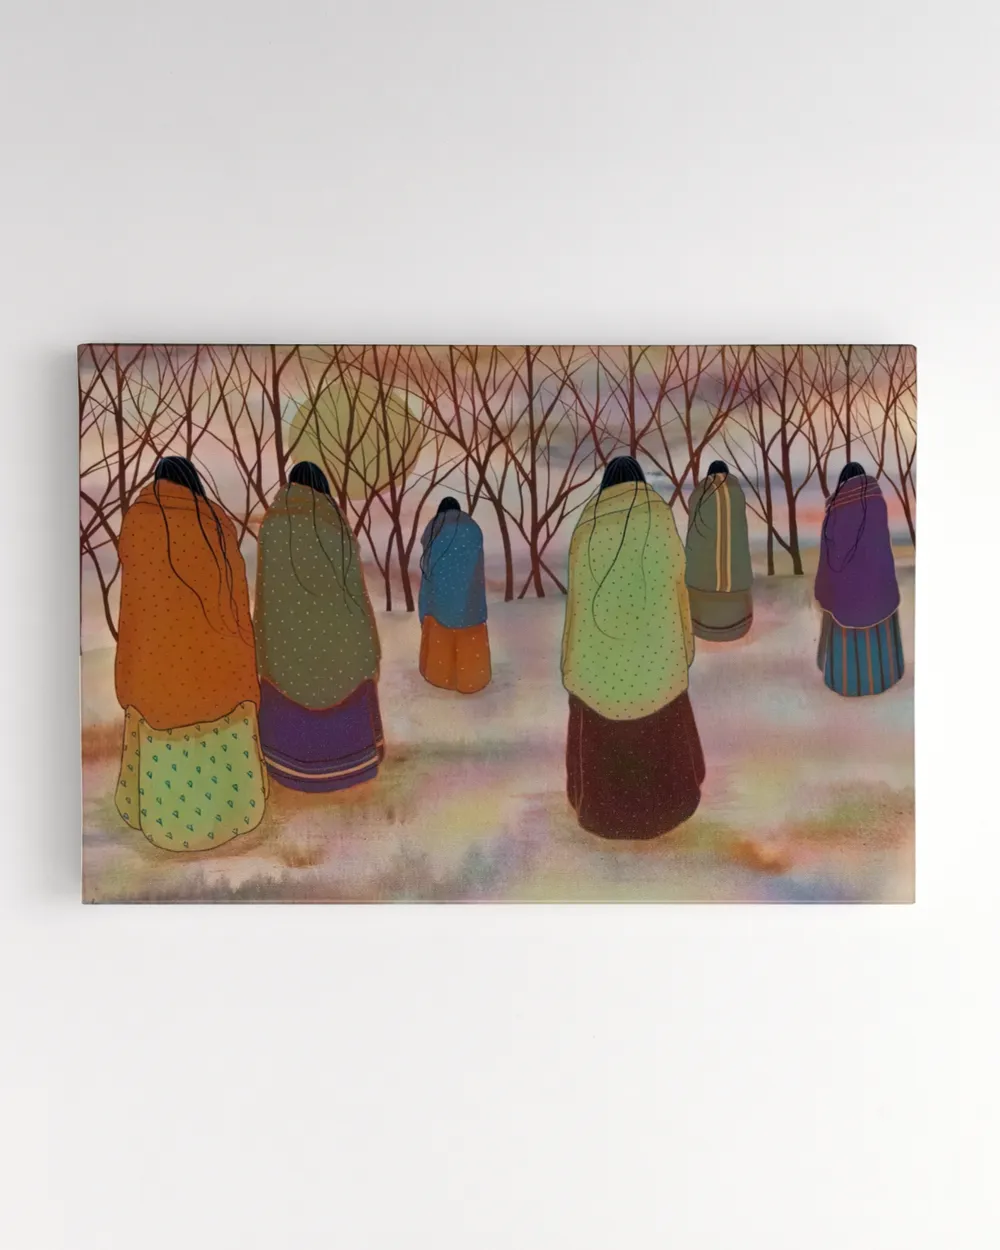 naa-ujv-13 Women's Trail by Jeanne Rorex-Bridges Canvas